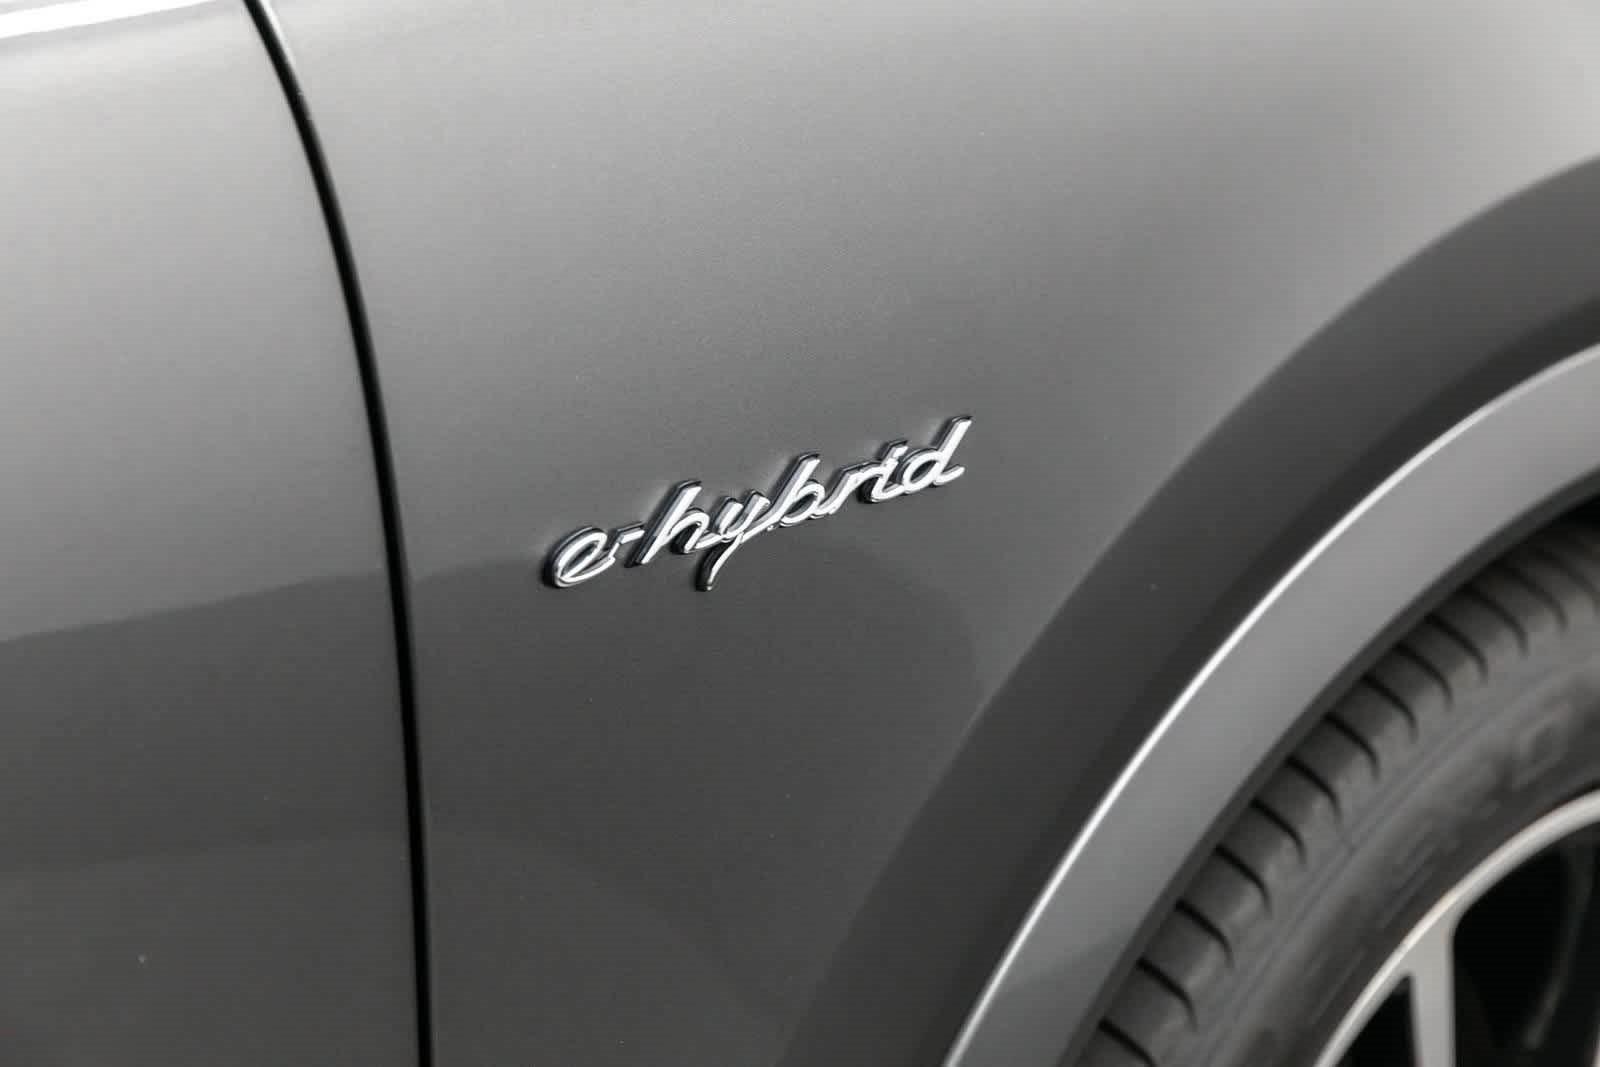 2022 Porsche Cayenne E-Hybrid